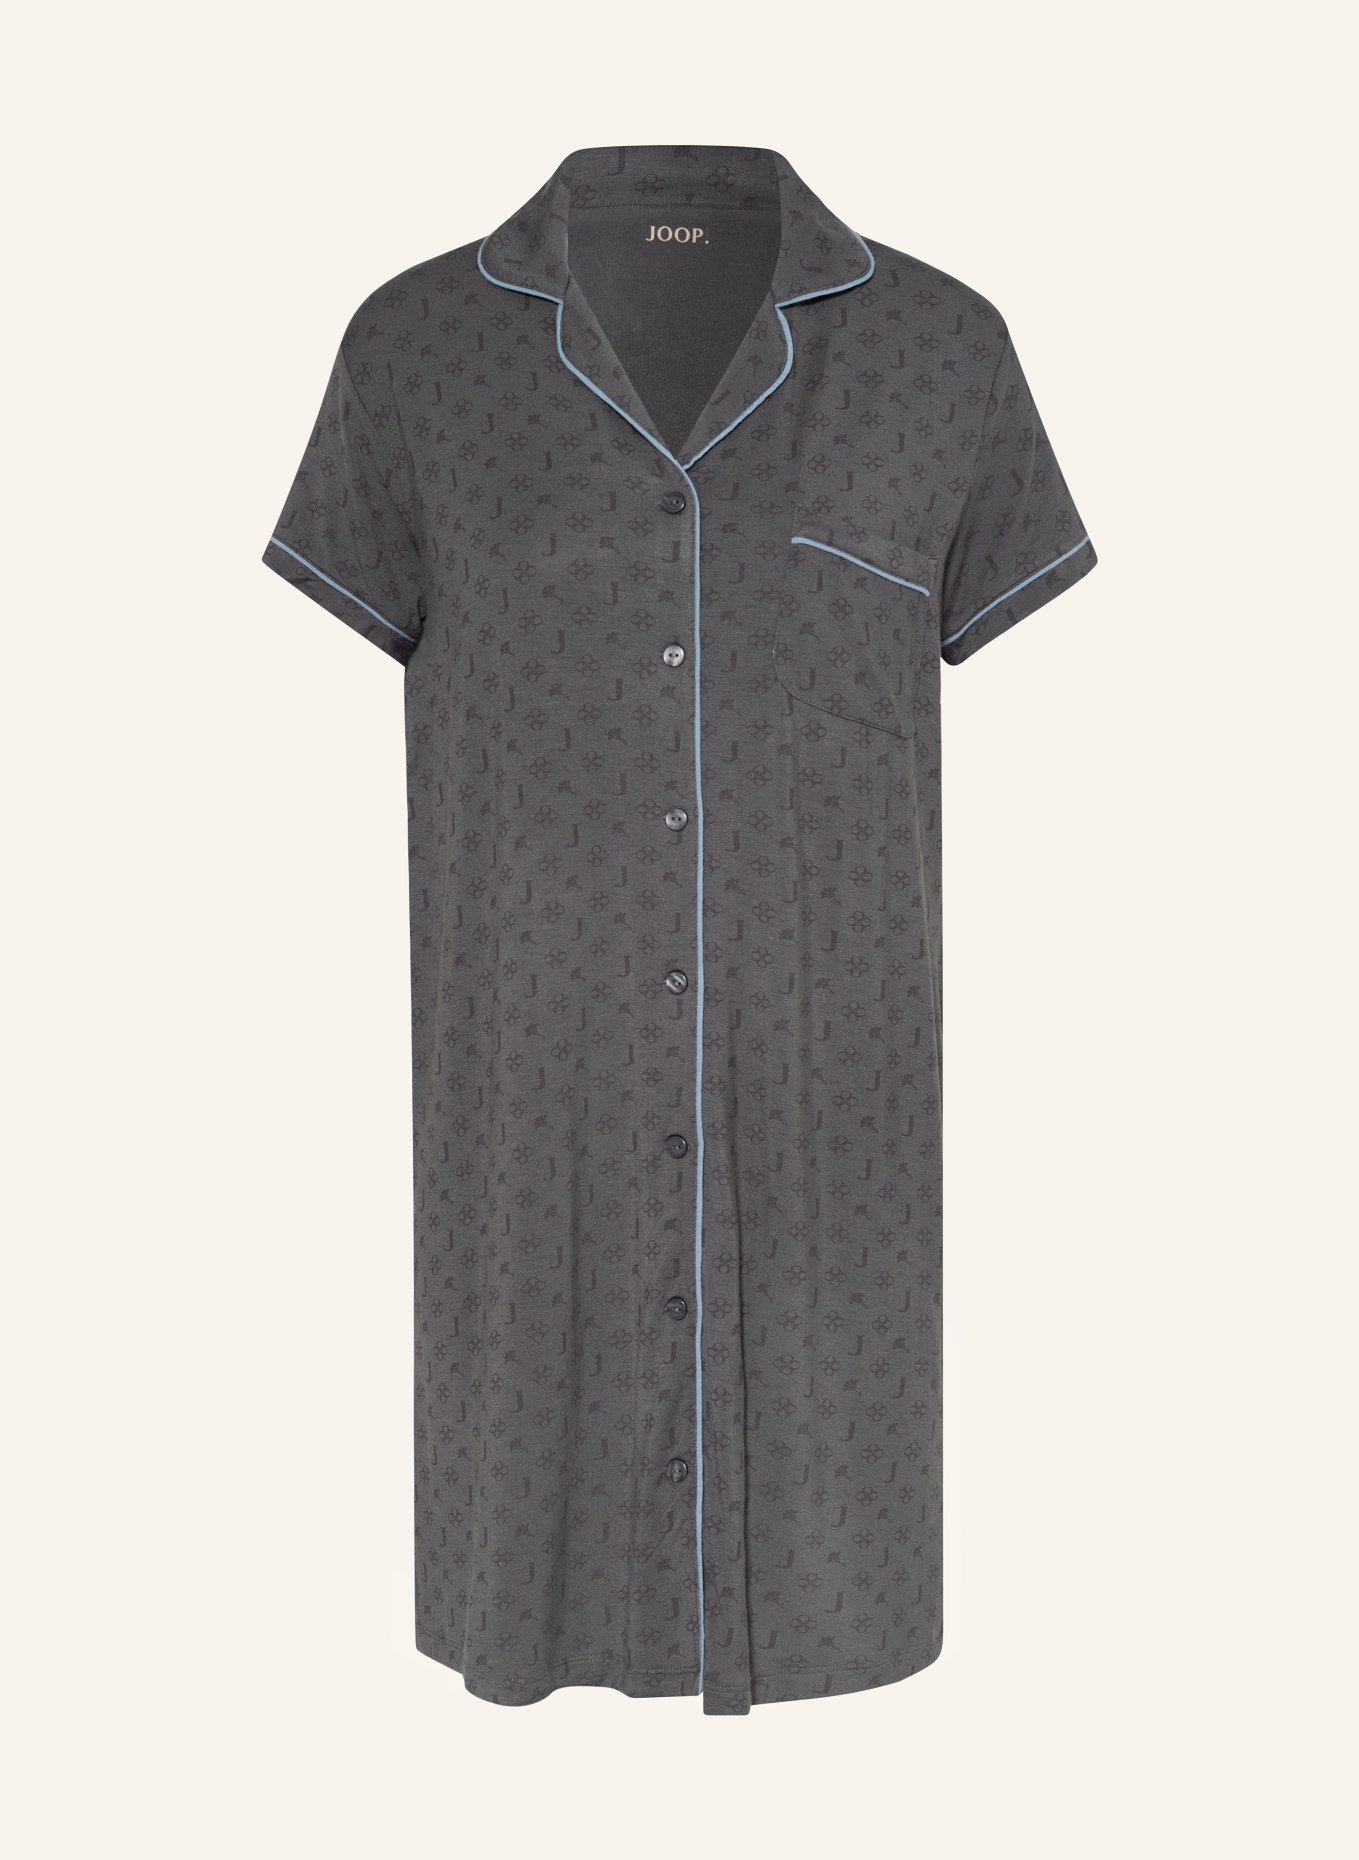 JOOP! Nightgown, Color: DARK GRAY (Image 1)